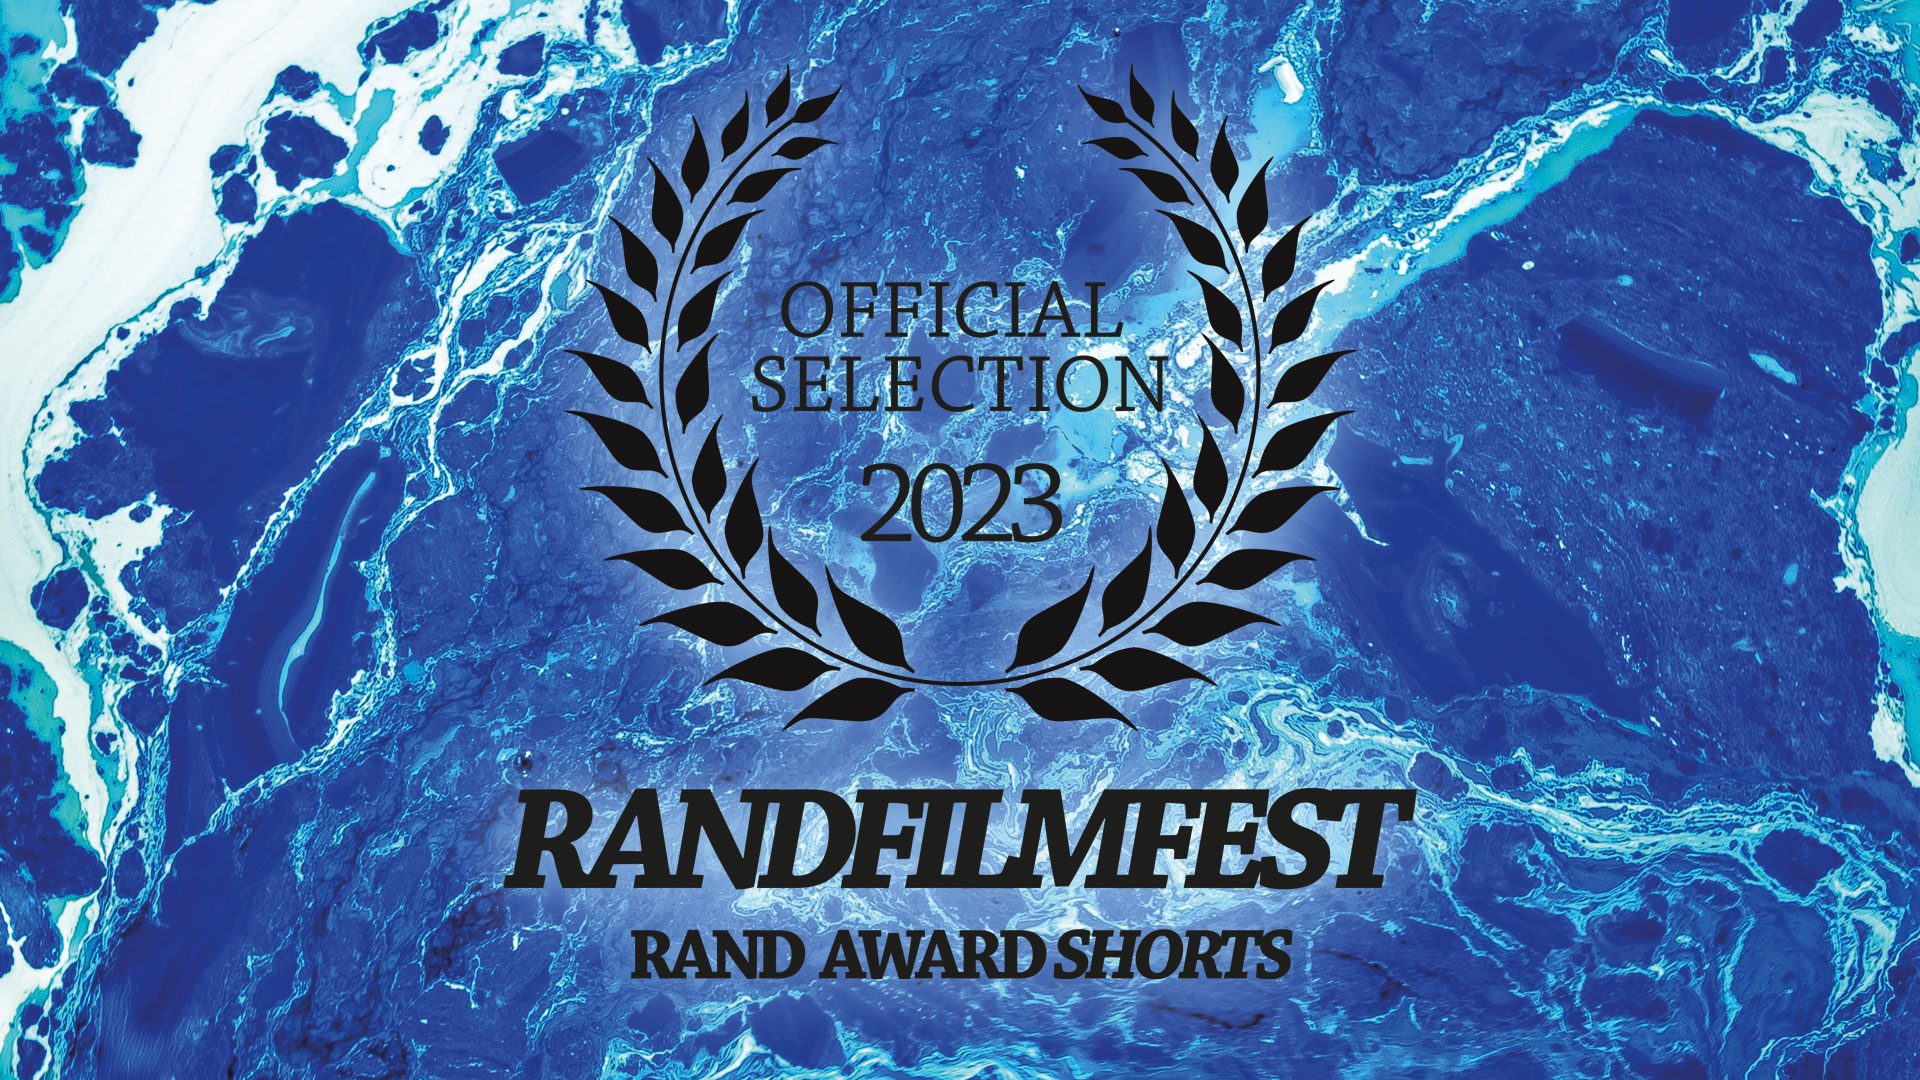 Kurzfilmrolle 2: Rand Award Shorts Nominees 2023